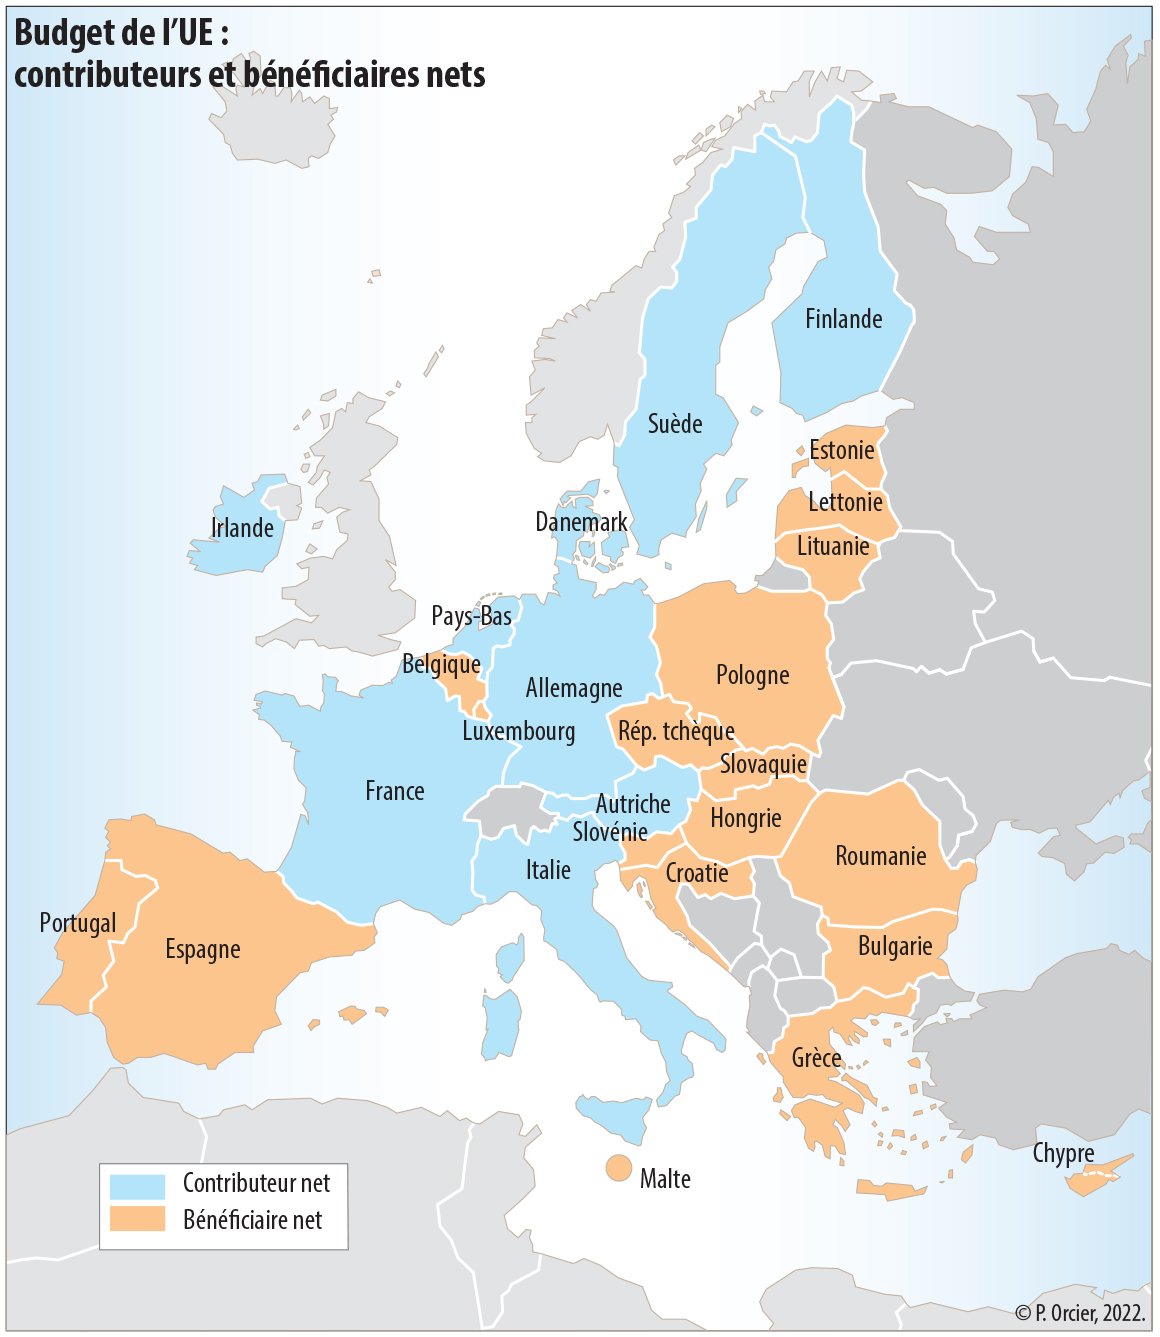 Etats contributeurs et bénéficiaires nets de l'UE